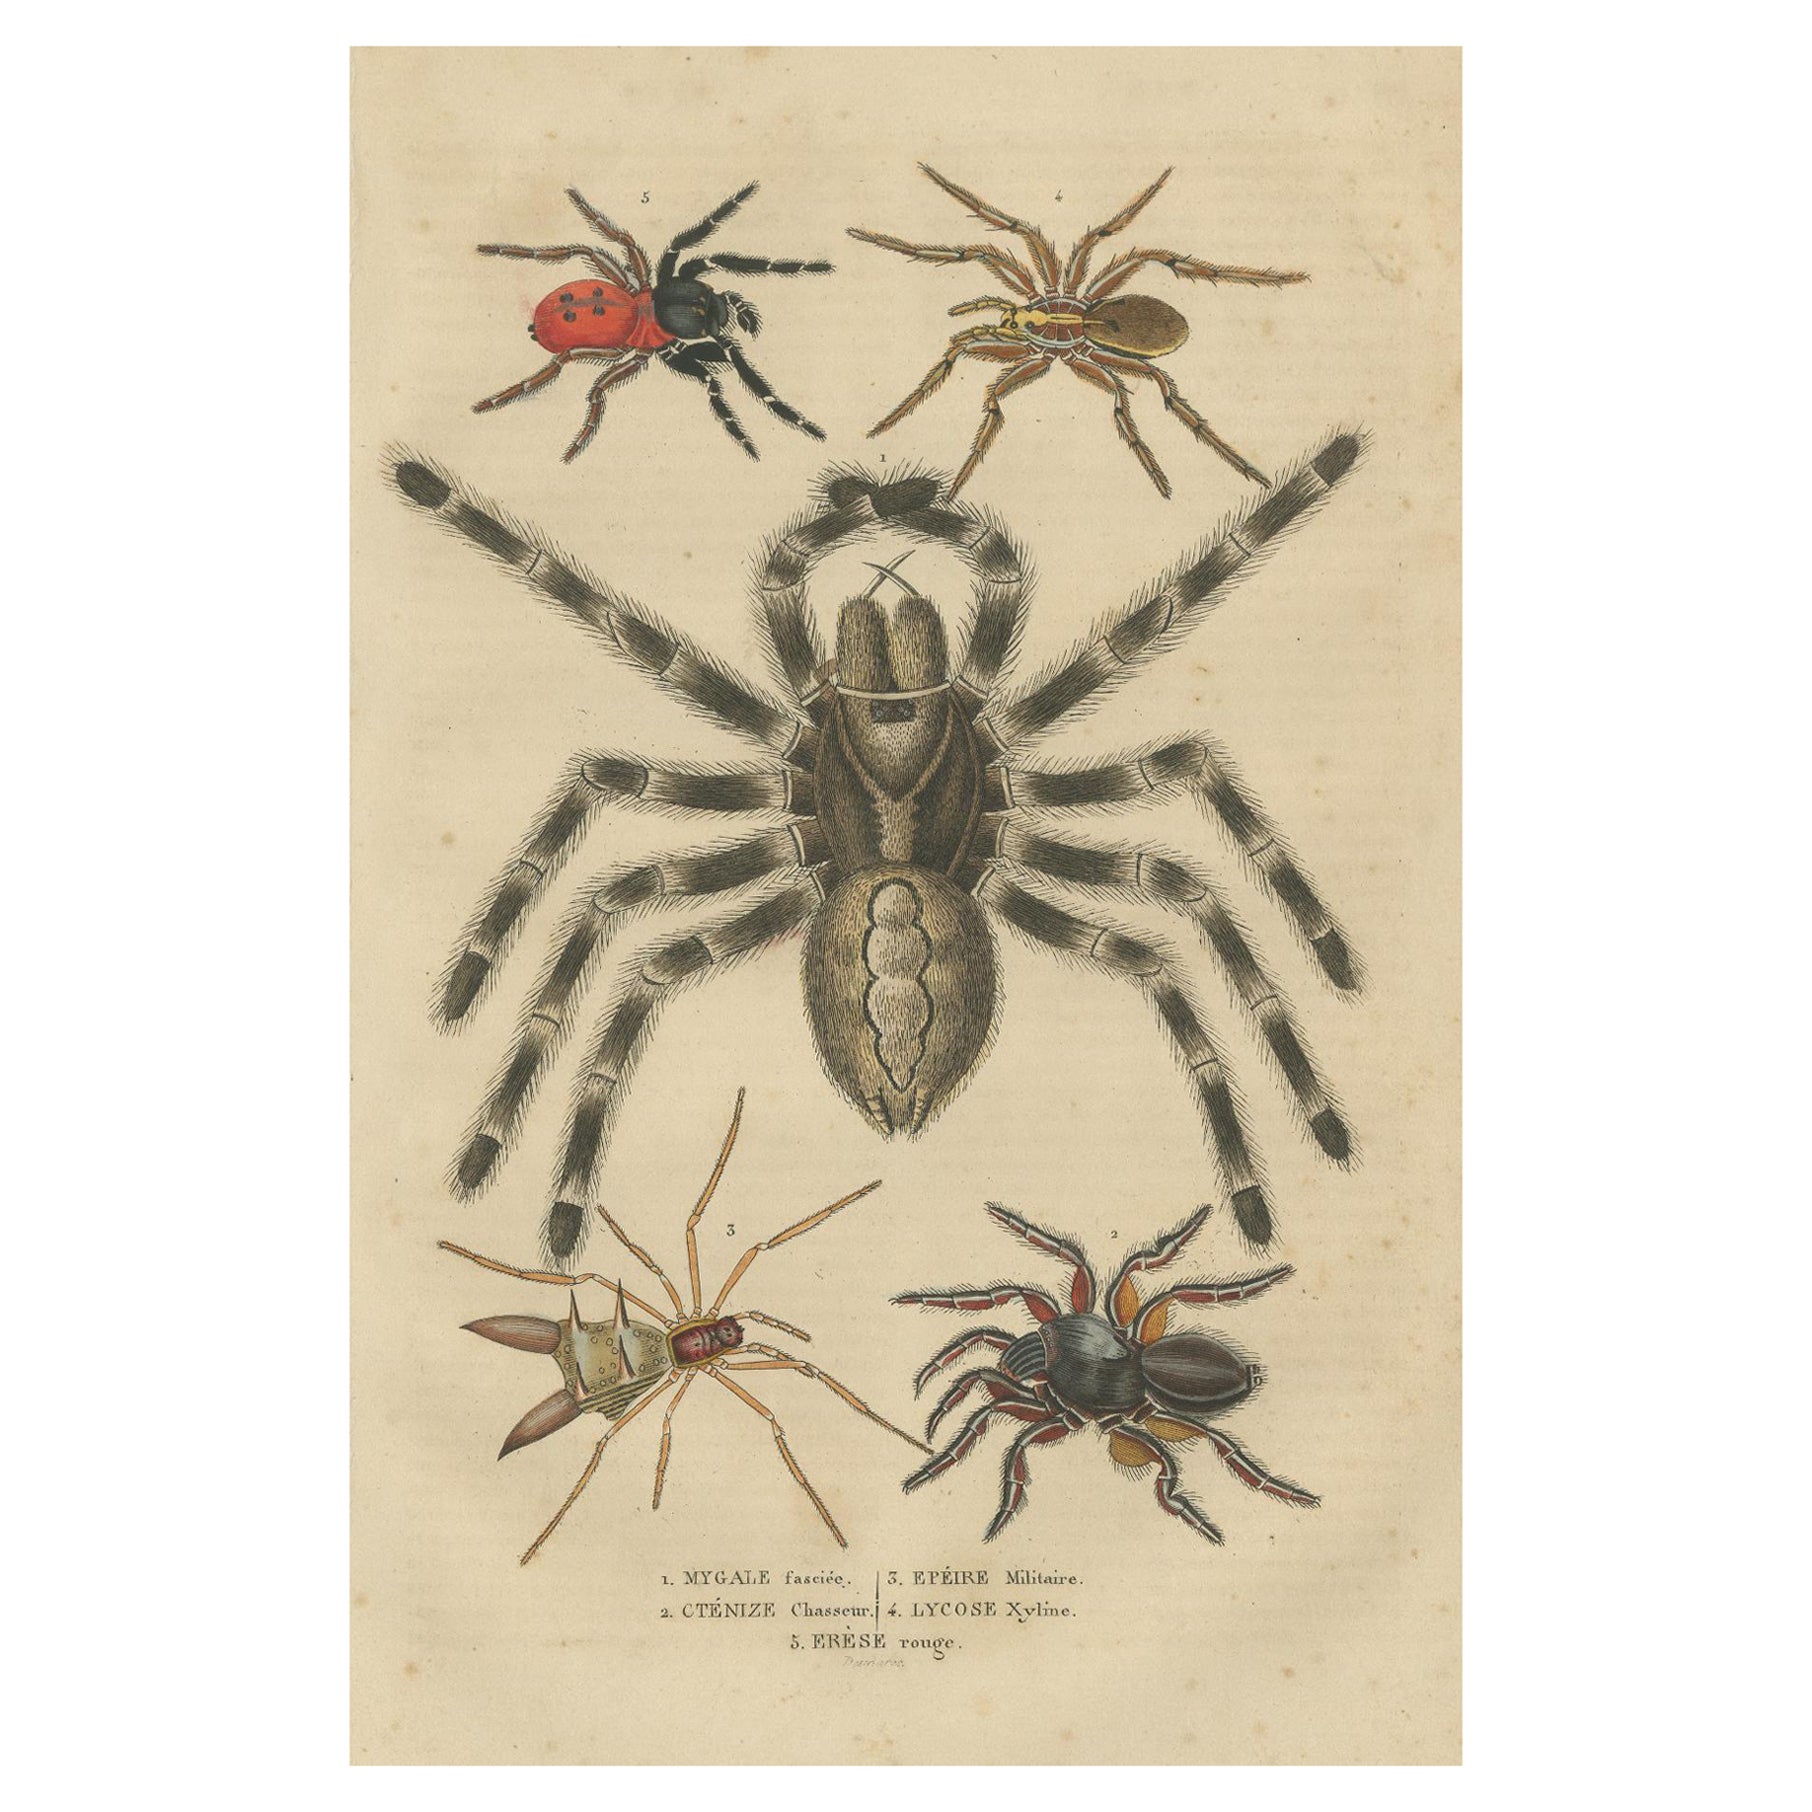 Antike Arachnid Study aus dem Jahr 1845: Handkolorierte Gravur verschiedener Spinnenexemplare